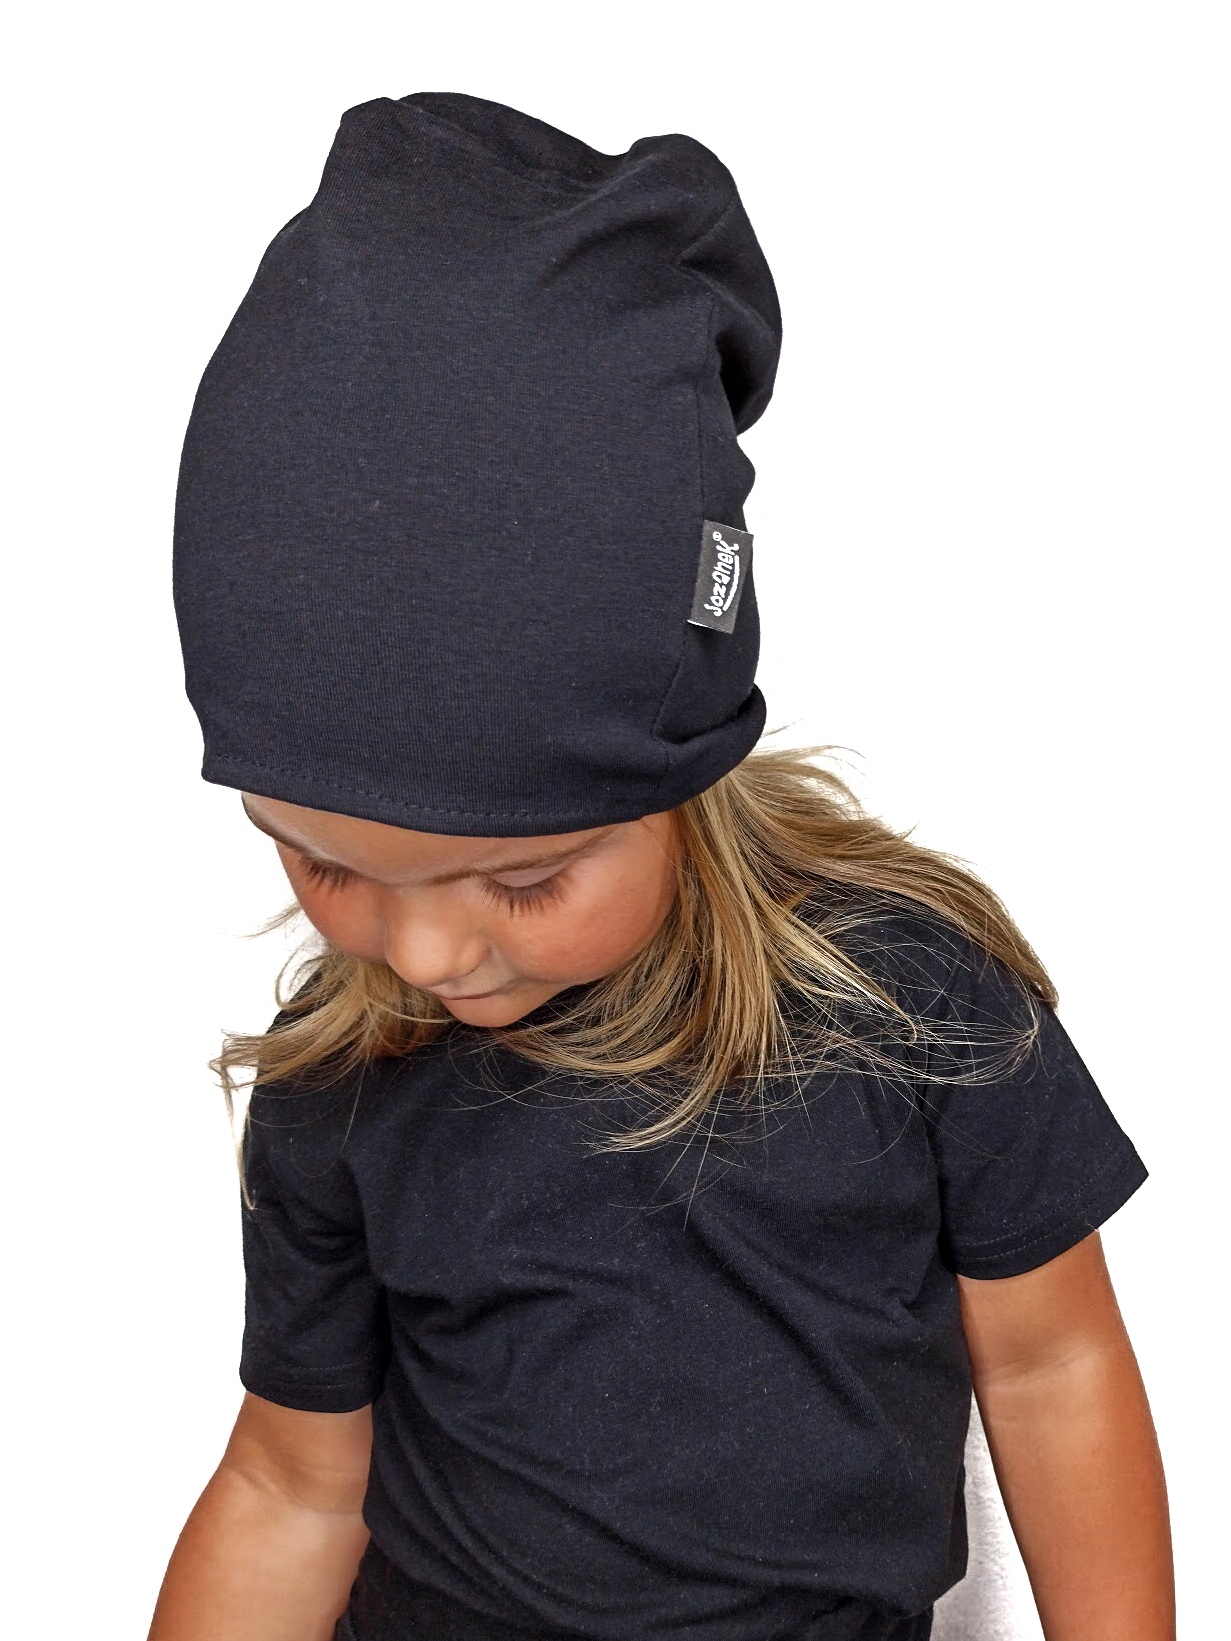 Baumwollmütze für Kinder, zweiseitig,schwarz+Jeans